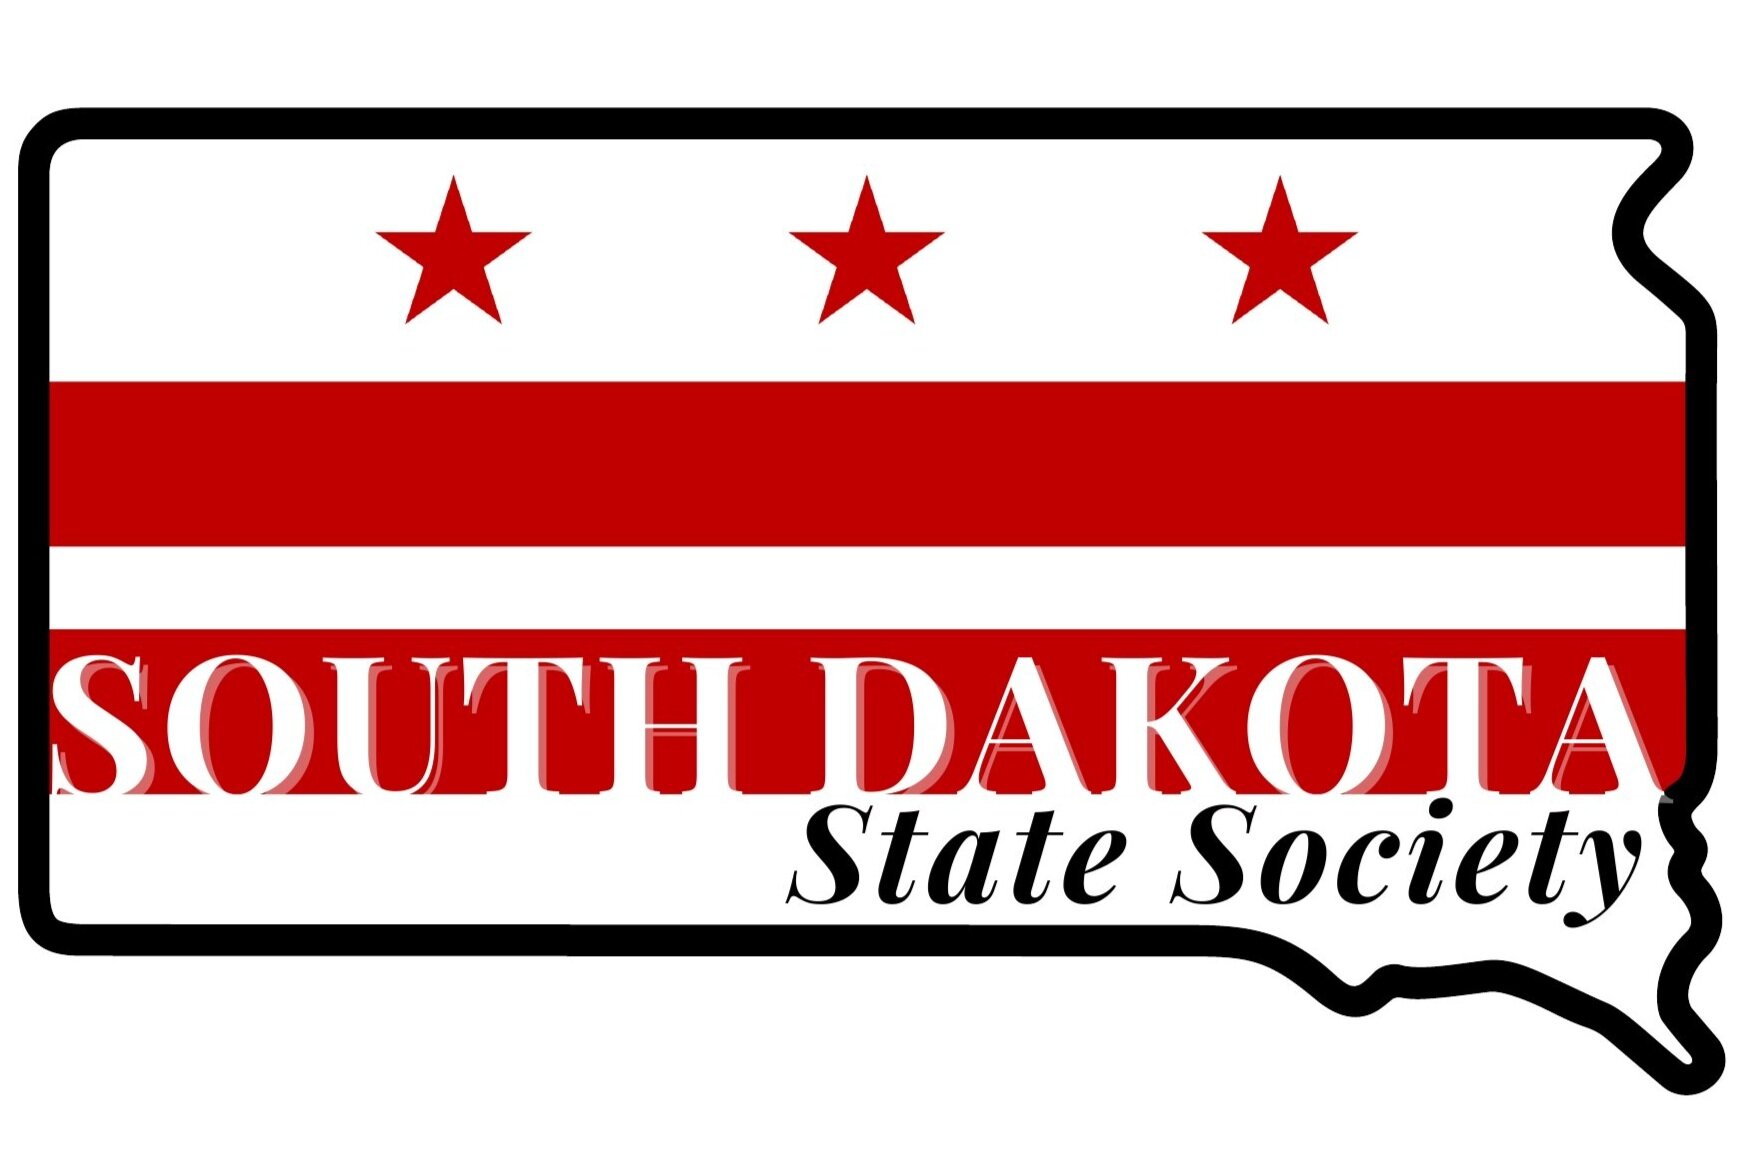 South Dakota State Society